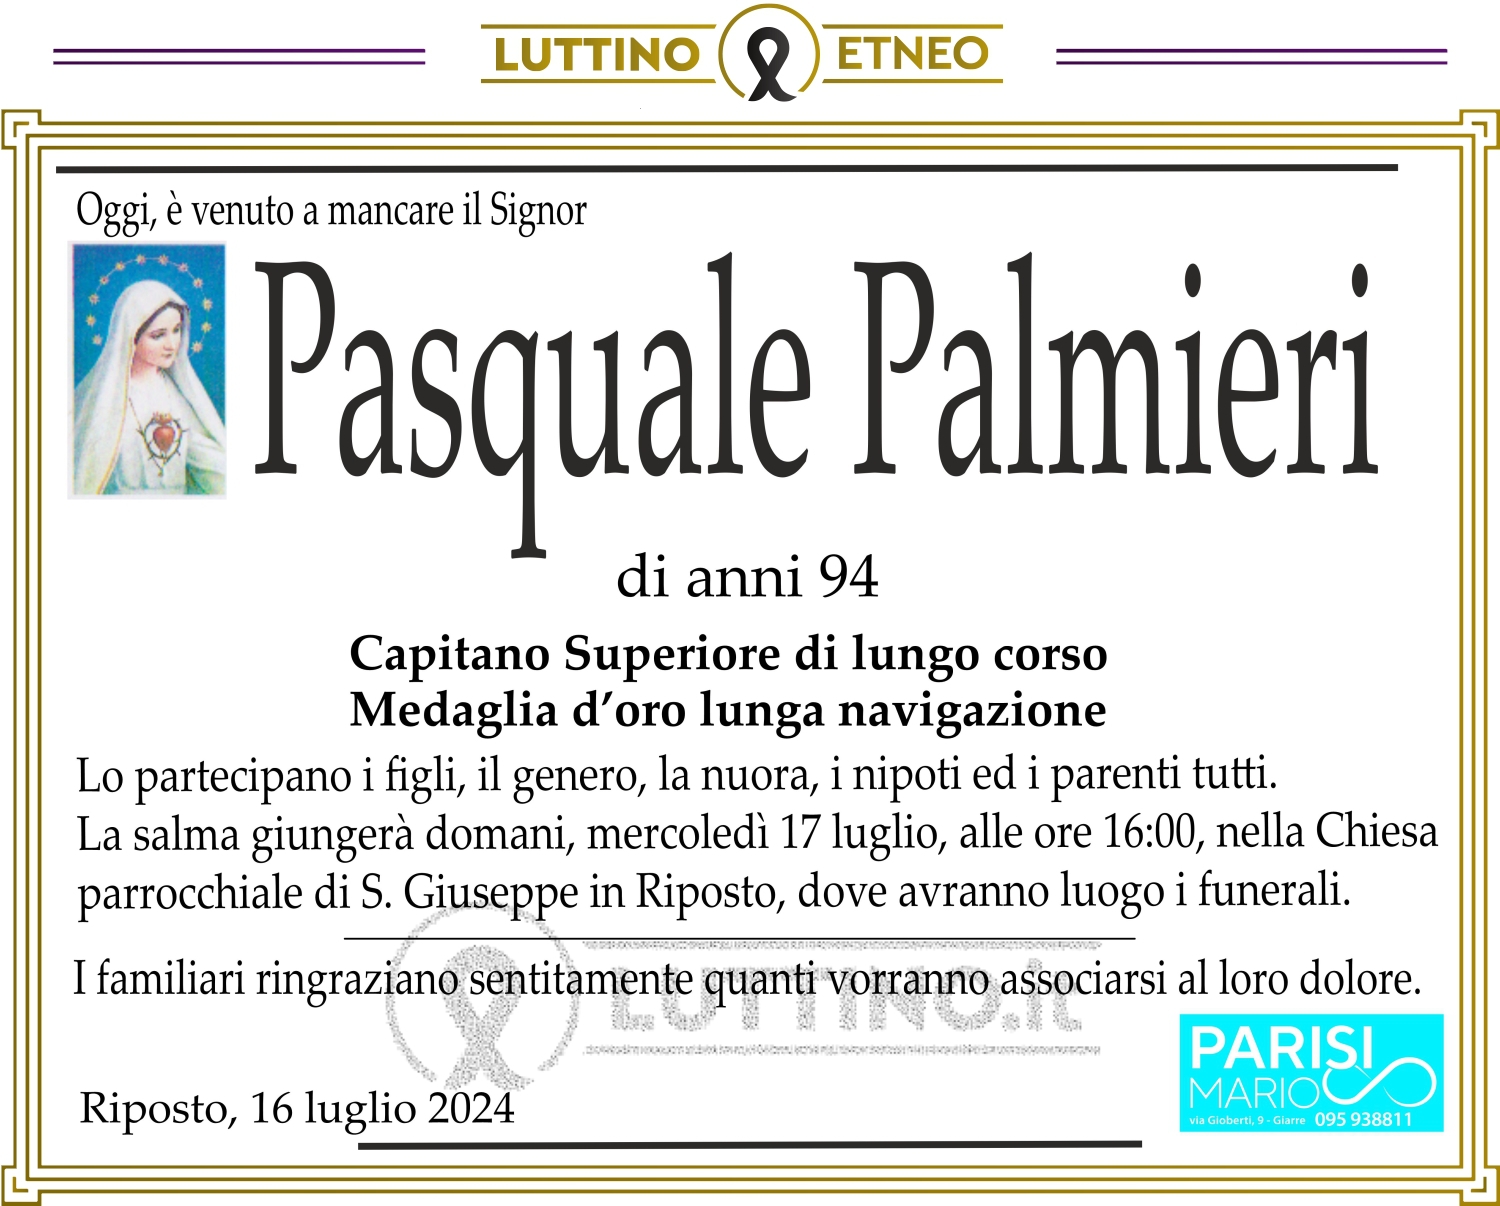 Pasquale Palmieri